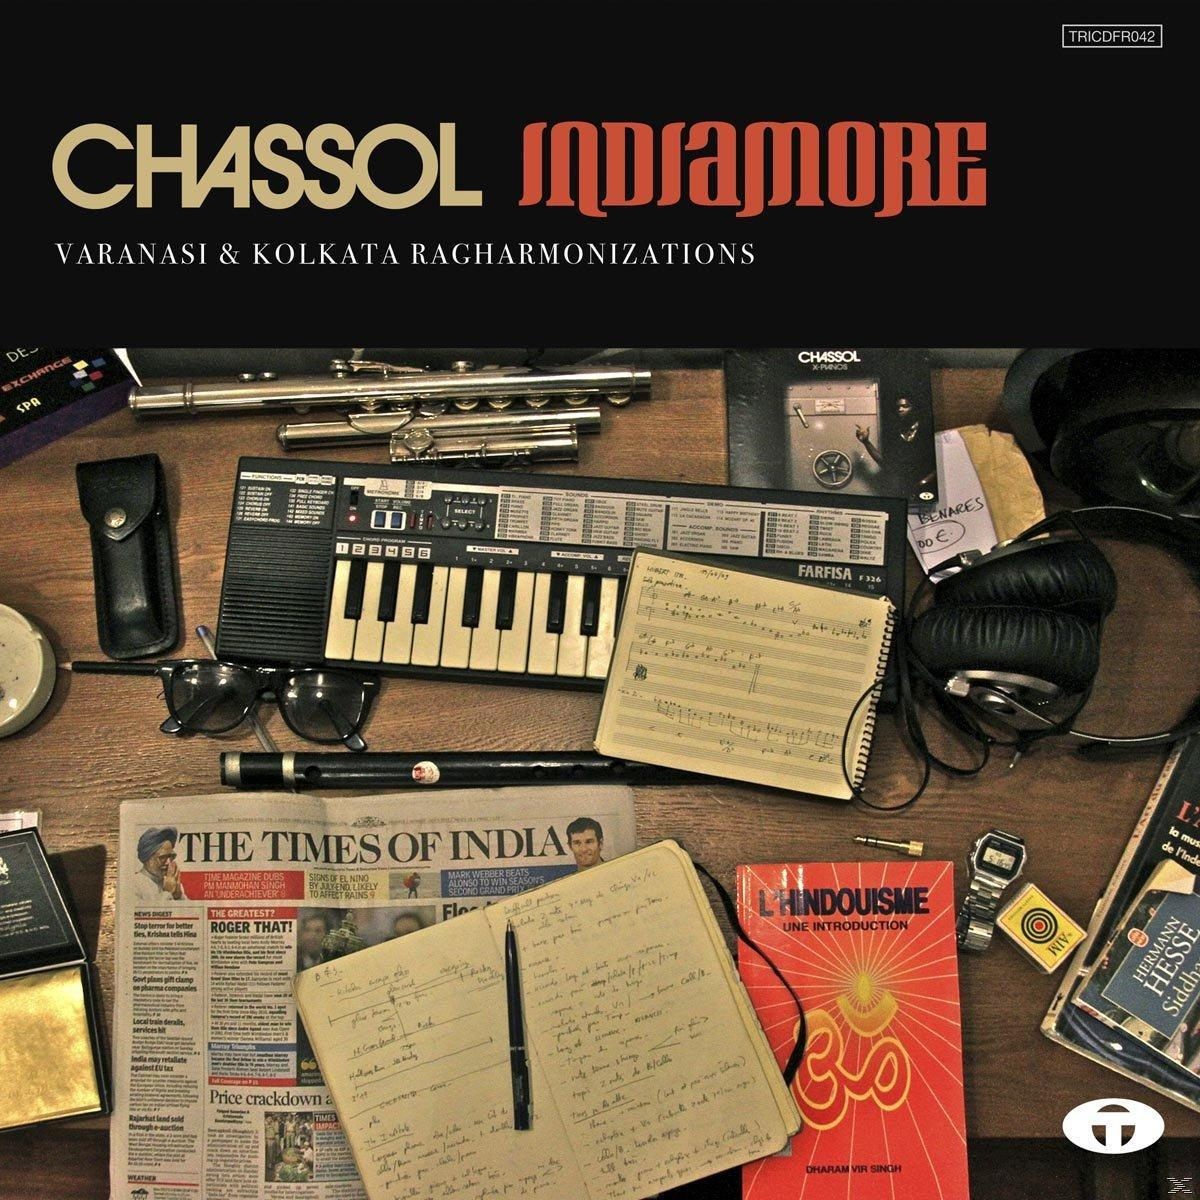 Chassol - - Indiamore (Vinyl)